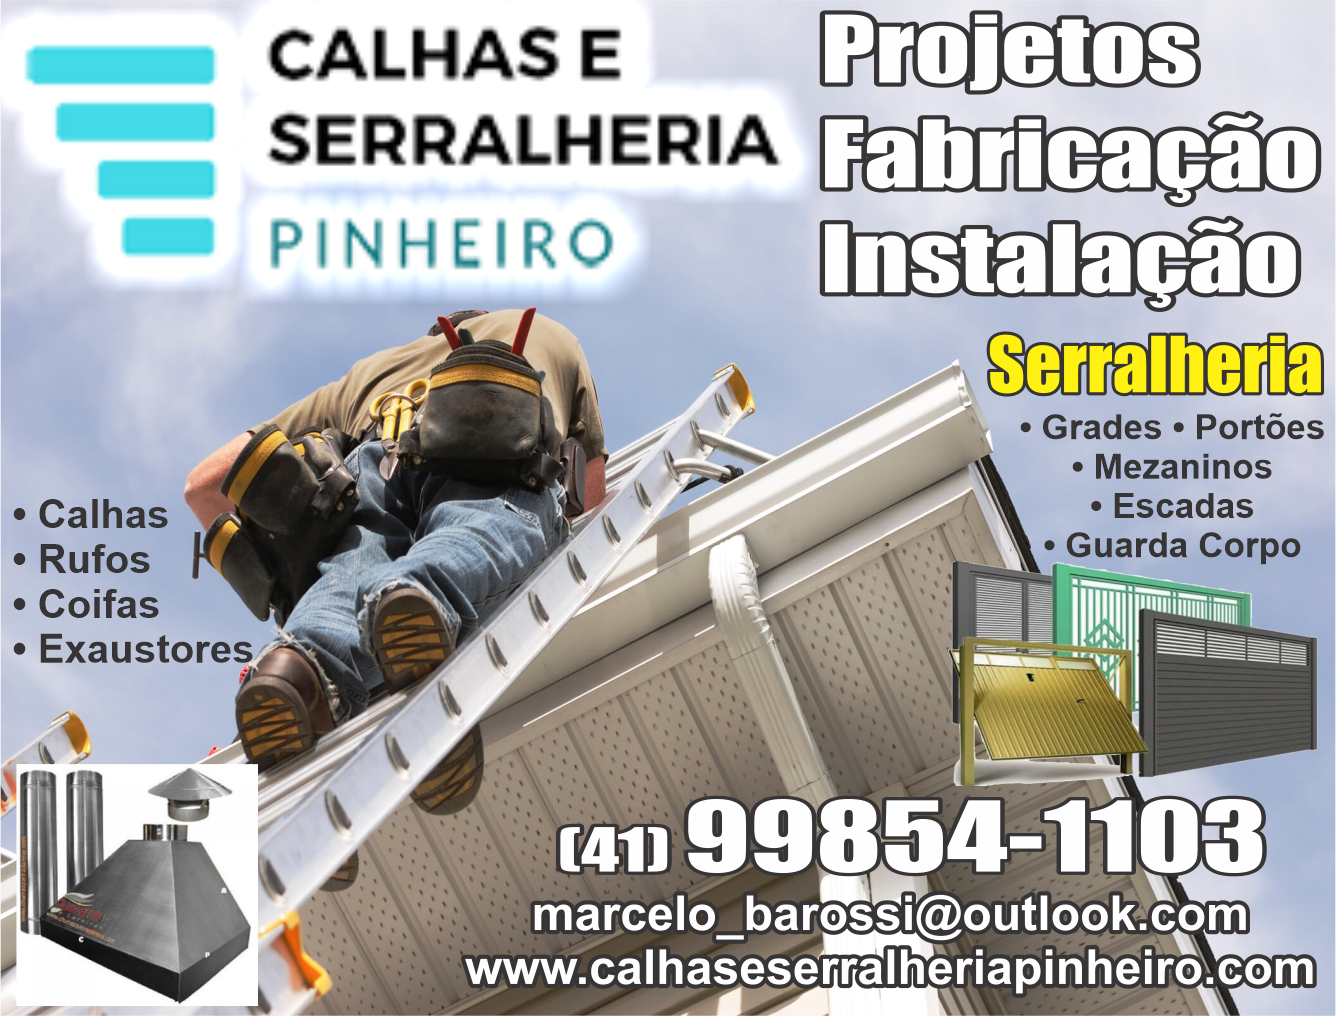 Calhas e Serralheria Pinheiro      Fones: (41) 99854-1103 /